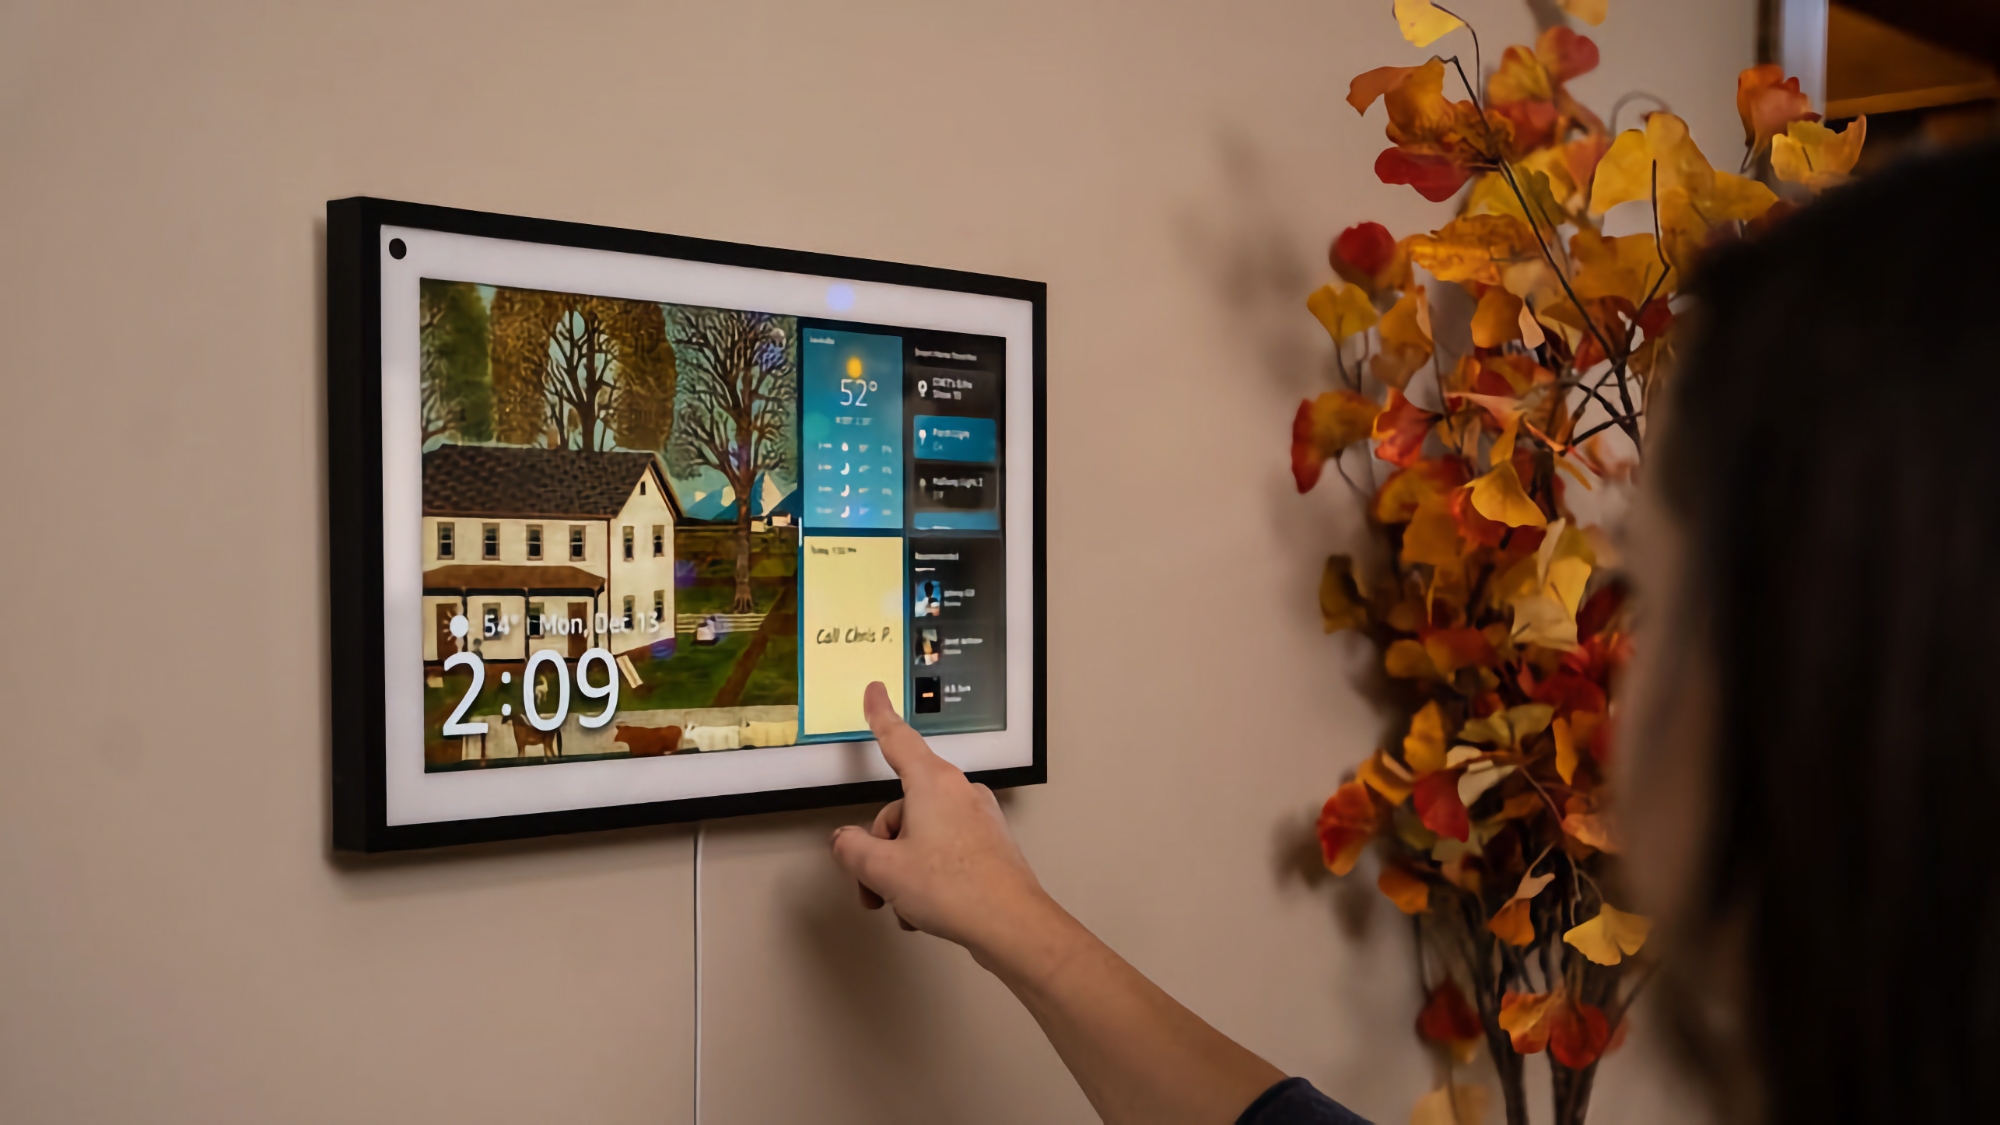 Amazon Echo Show smart display con pantalla de 15 pulgadas y soporte para Alexa en oferta con 65€ de descuento